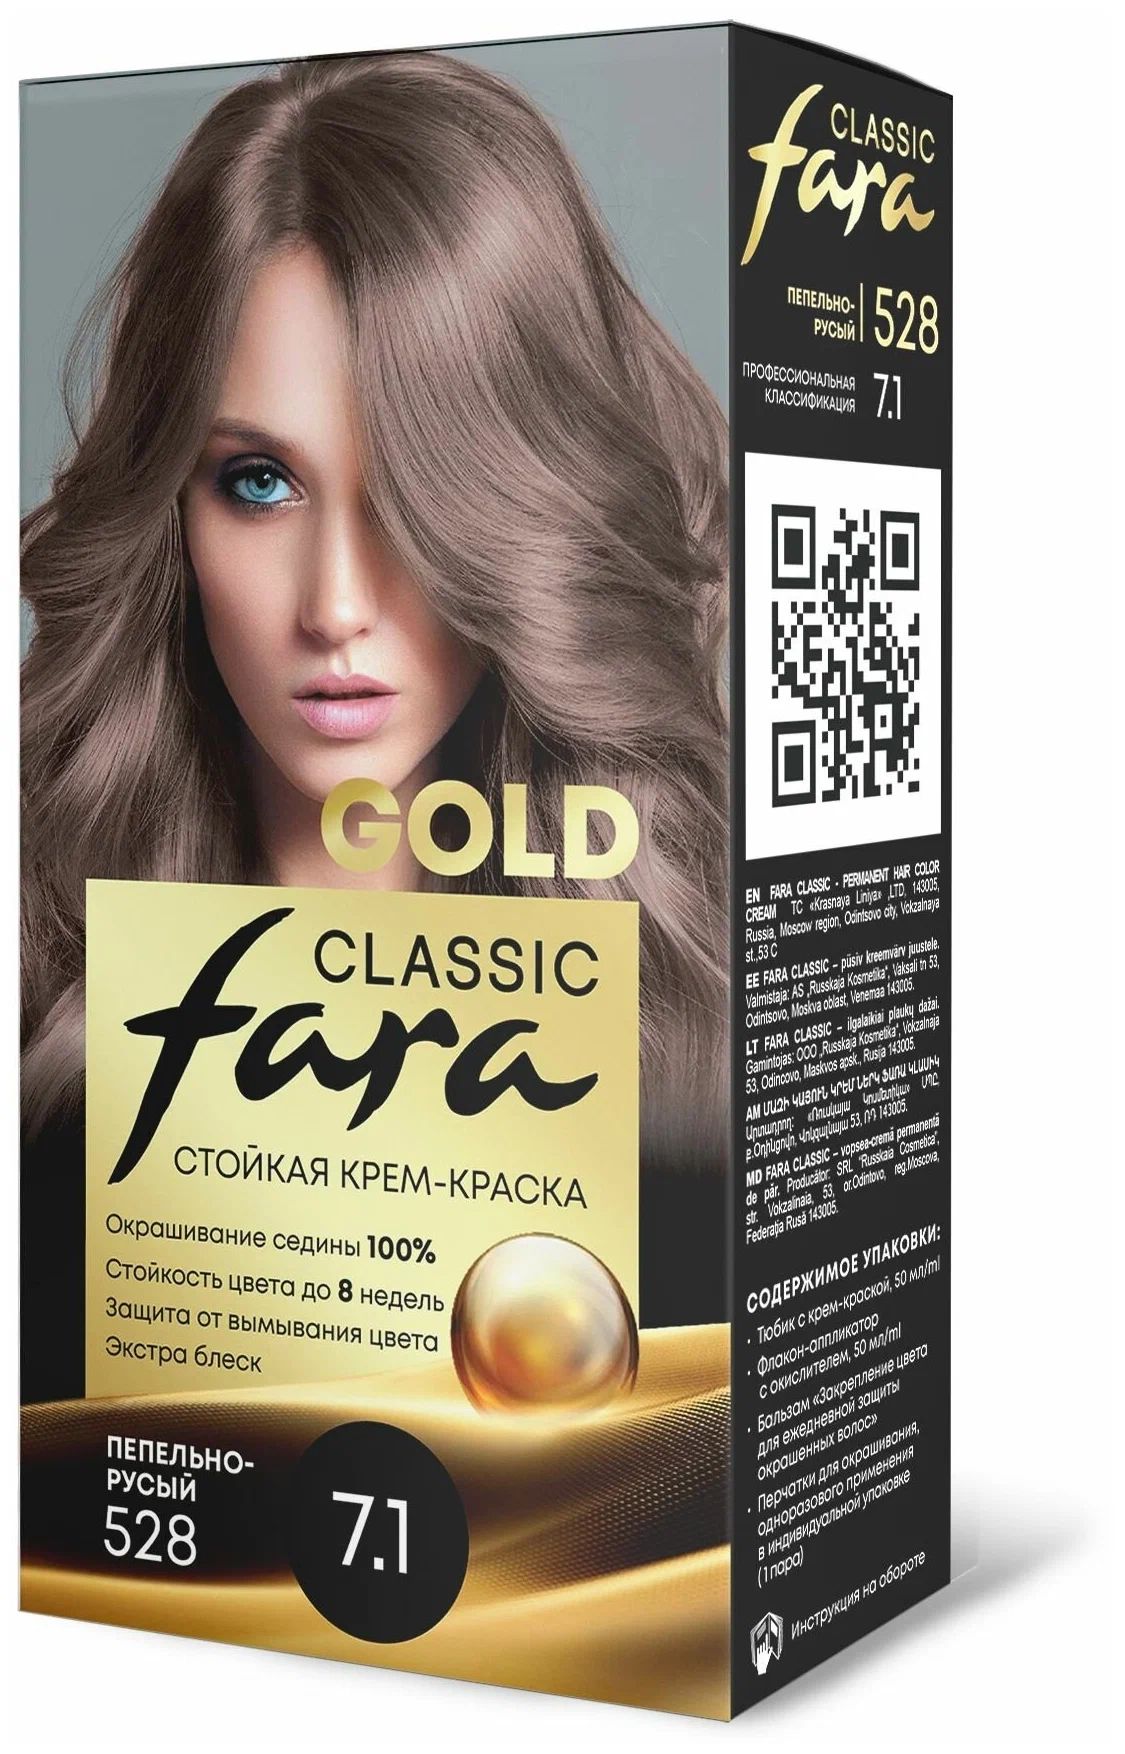 Крем-краска для волос Fara Classic Gold 528 пепельно-русый 7.1, 140 г fanny franco russe франко русская фанни